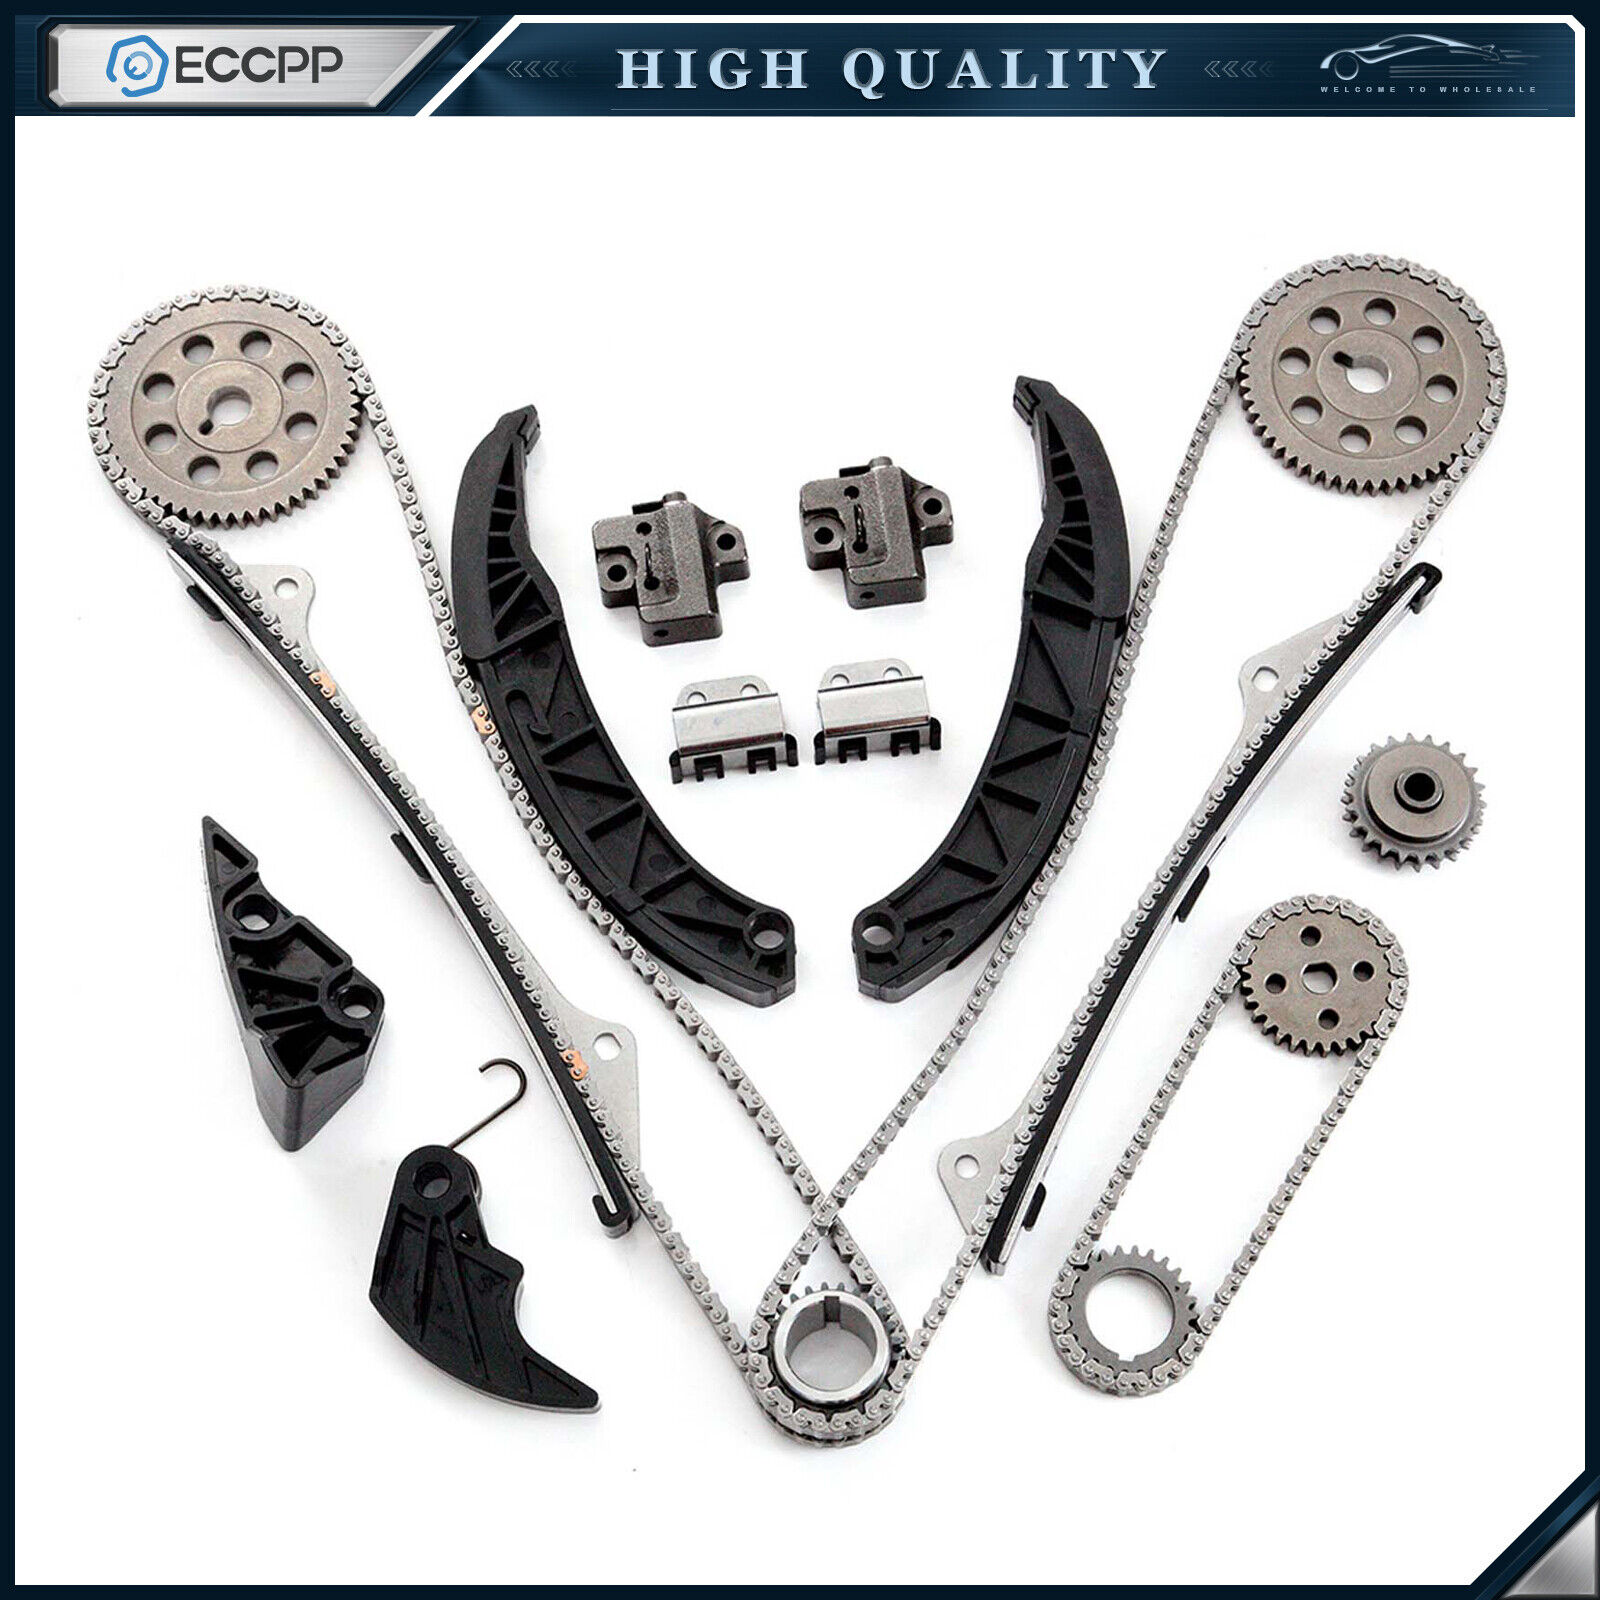 Timing Chain Kit for Hyundai Santa Fe kia Sorento 06-13 3.5L 3.8L V6 DOHC G6DA